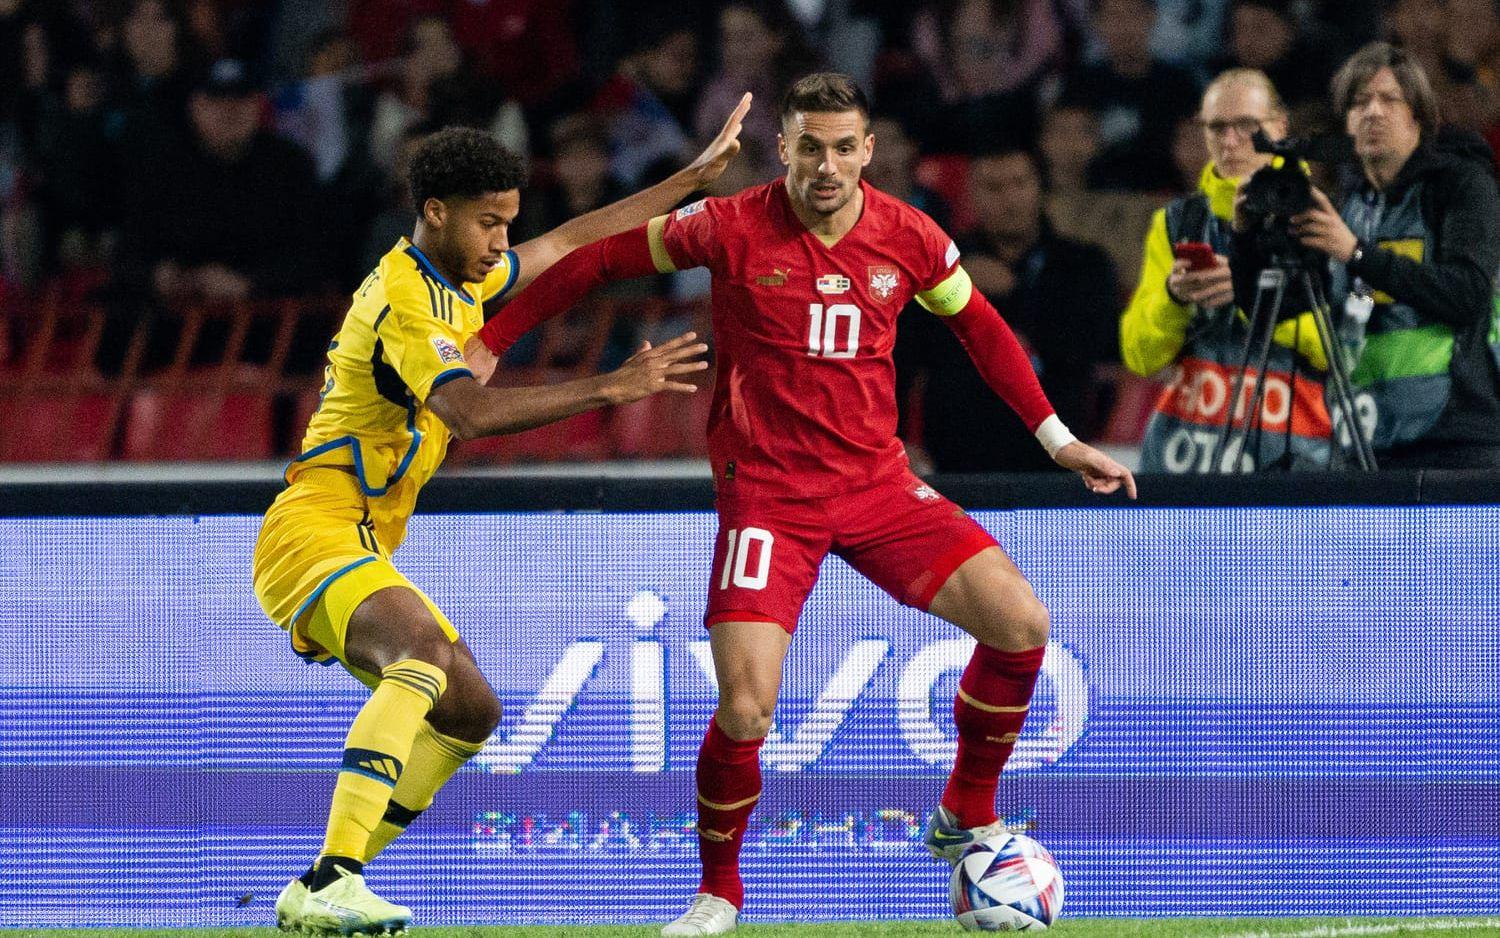 Sverige spelar under hård press efter att Norge chockartat förlorade sin match mot Slovenien, som nu passerat Sverige i gruppen.